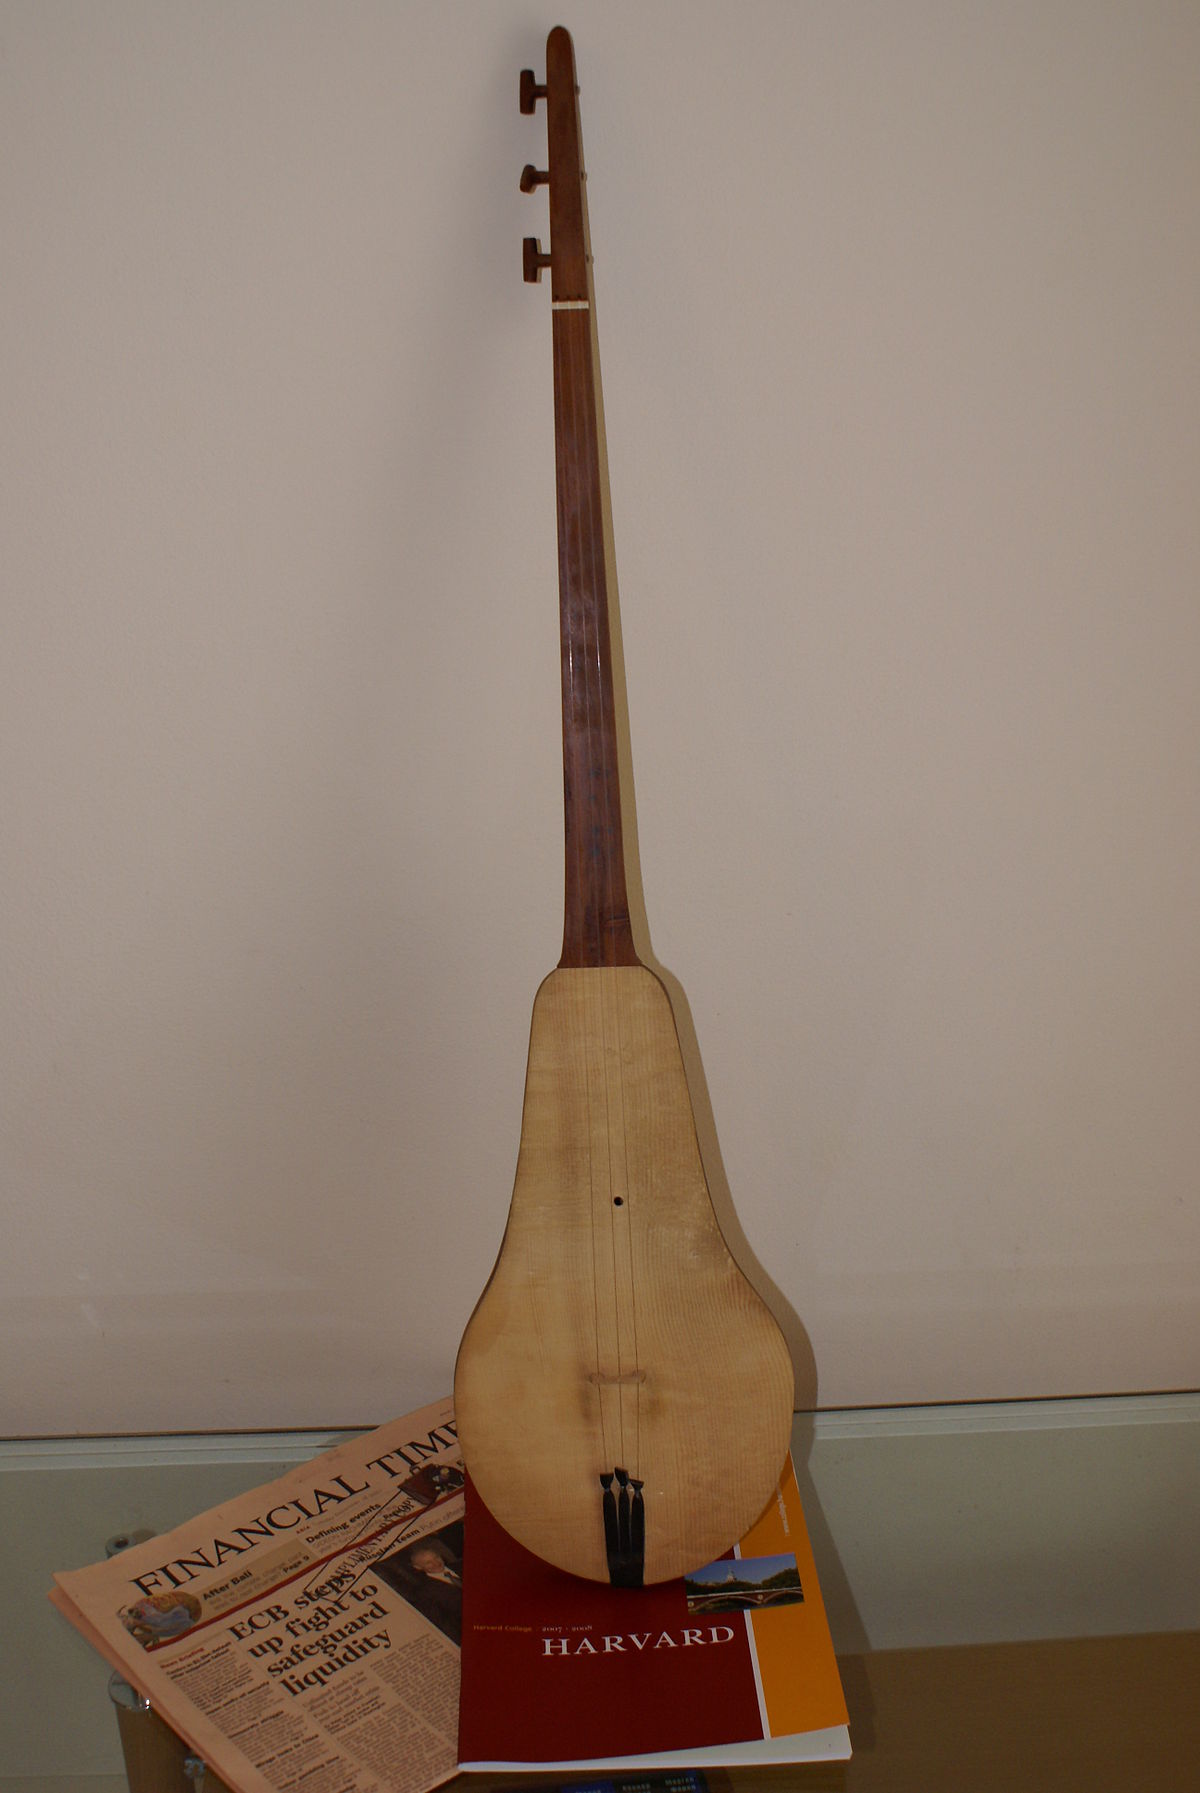 National instrument of Turkiye